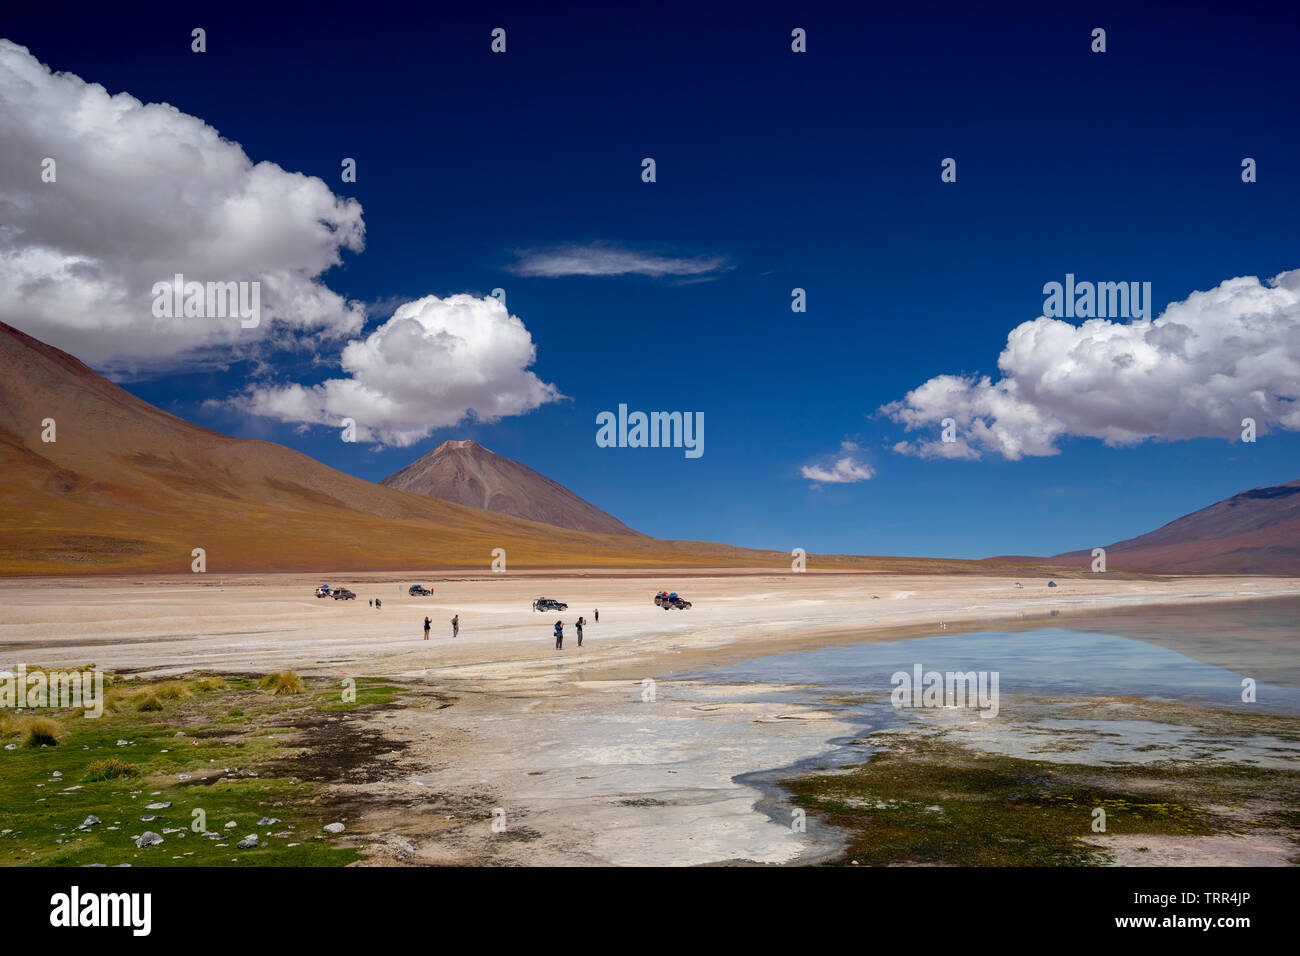 scenic landscape in the bolivian altiplano Stock Photo